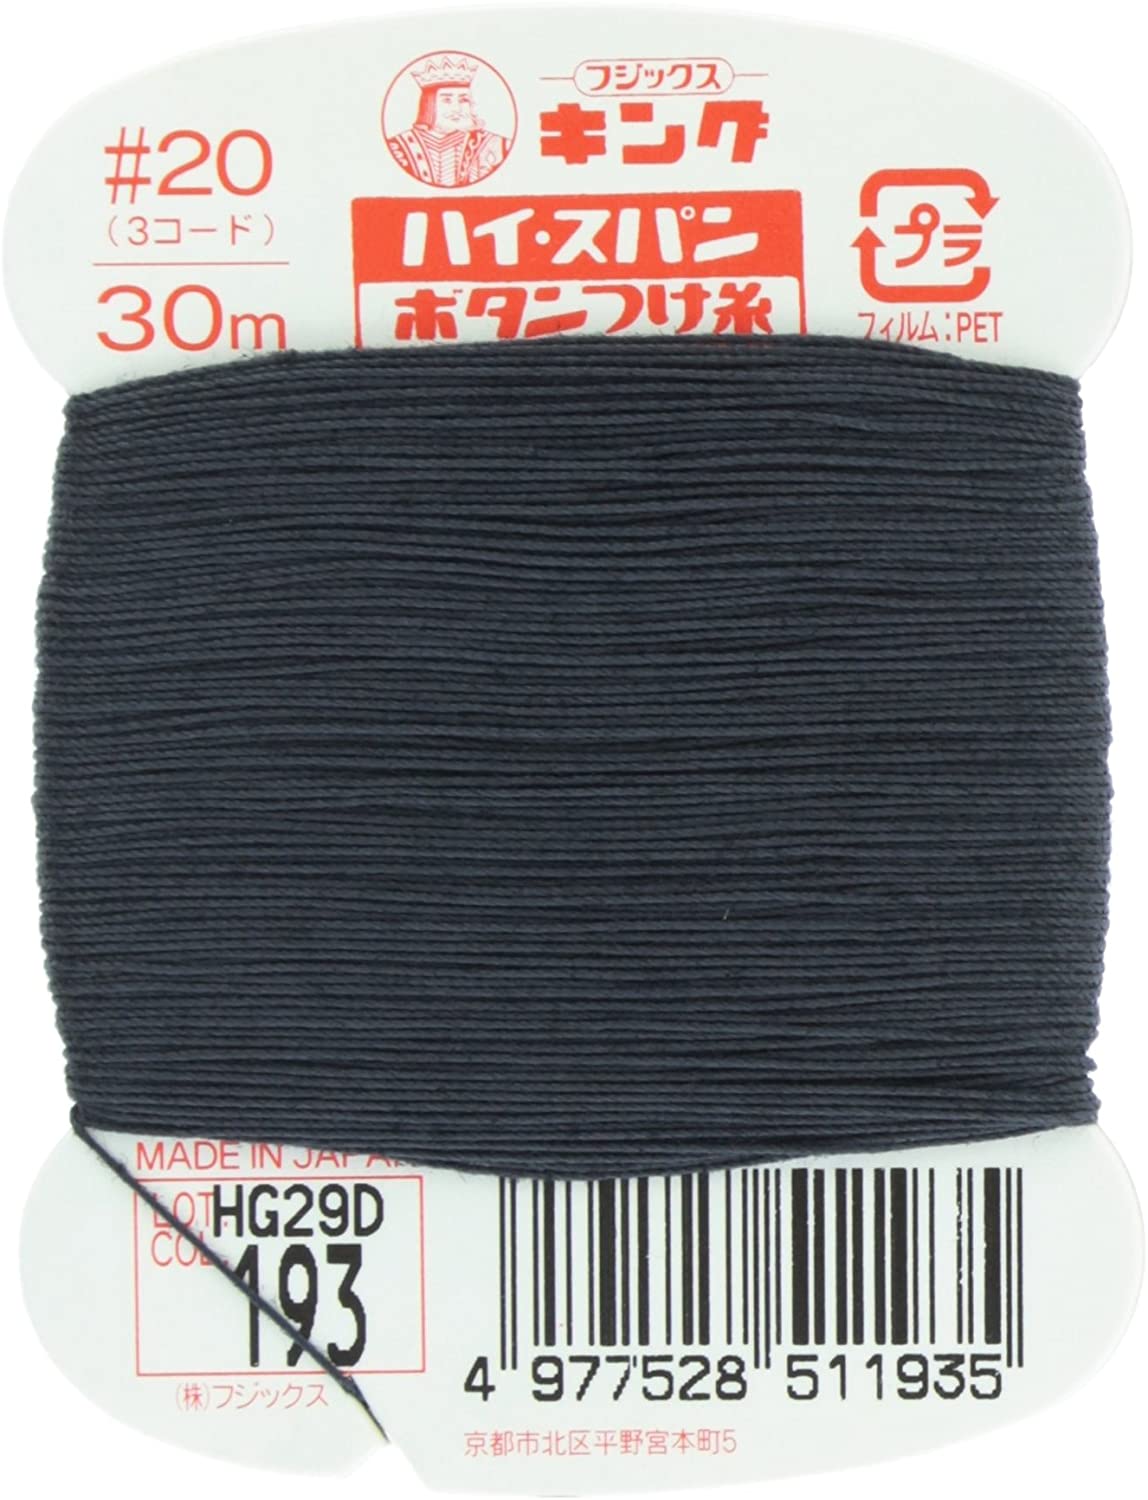 FK51-193 ハイスパンボタンつけ糸 #20 30m巻 (枚)